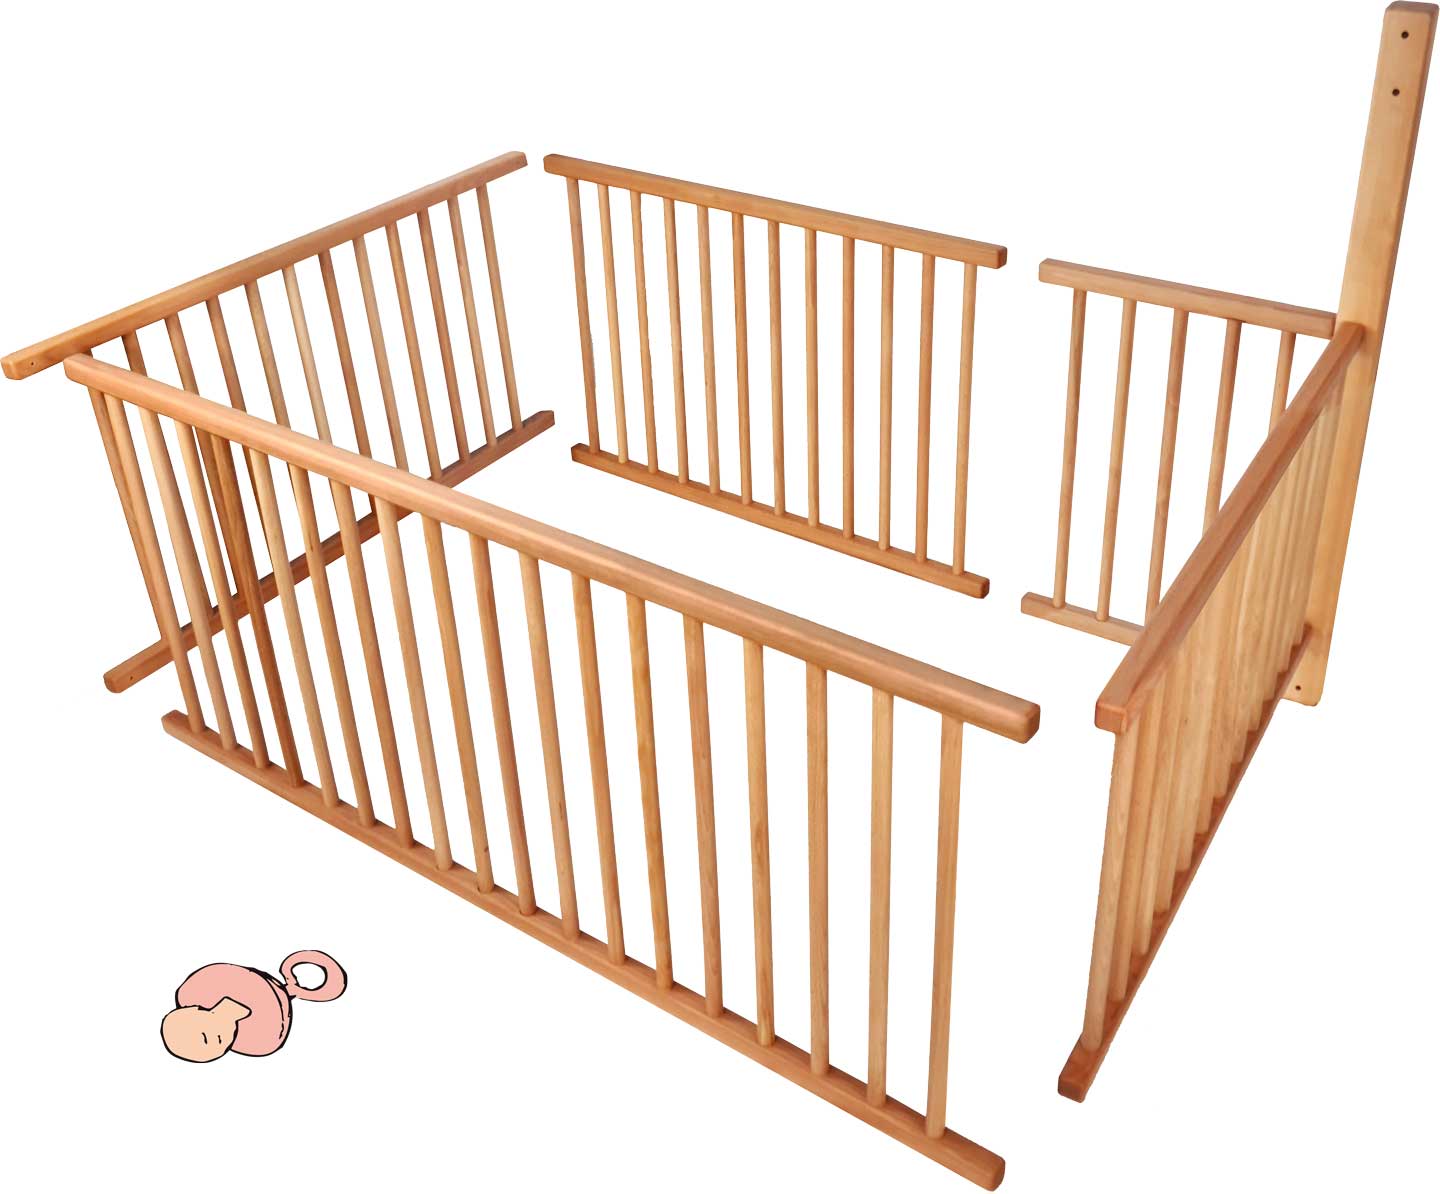 Set de reja para bebés para litera con pies estándar (196 cm) y posición de escalera A para ¾ de la superficie de dormir incl. barra adicional**